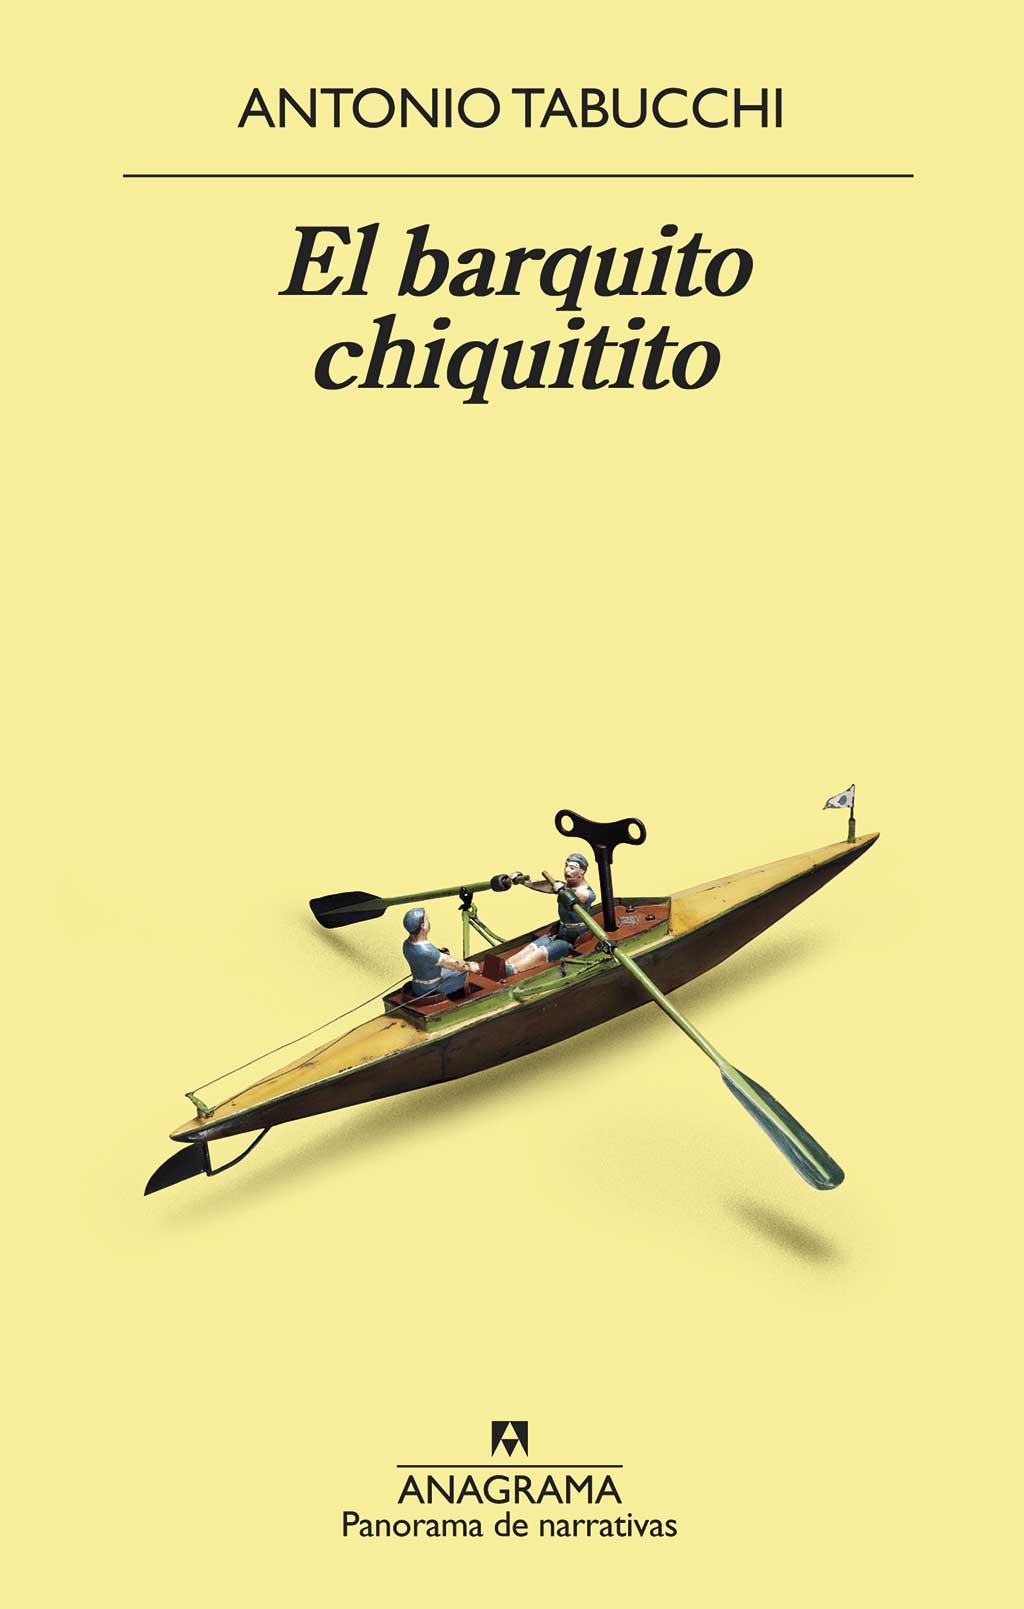 El barquito chiquitito. Antonio Tabucchi.